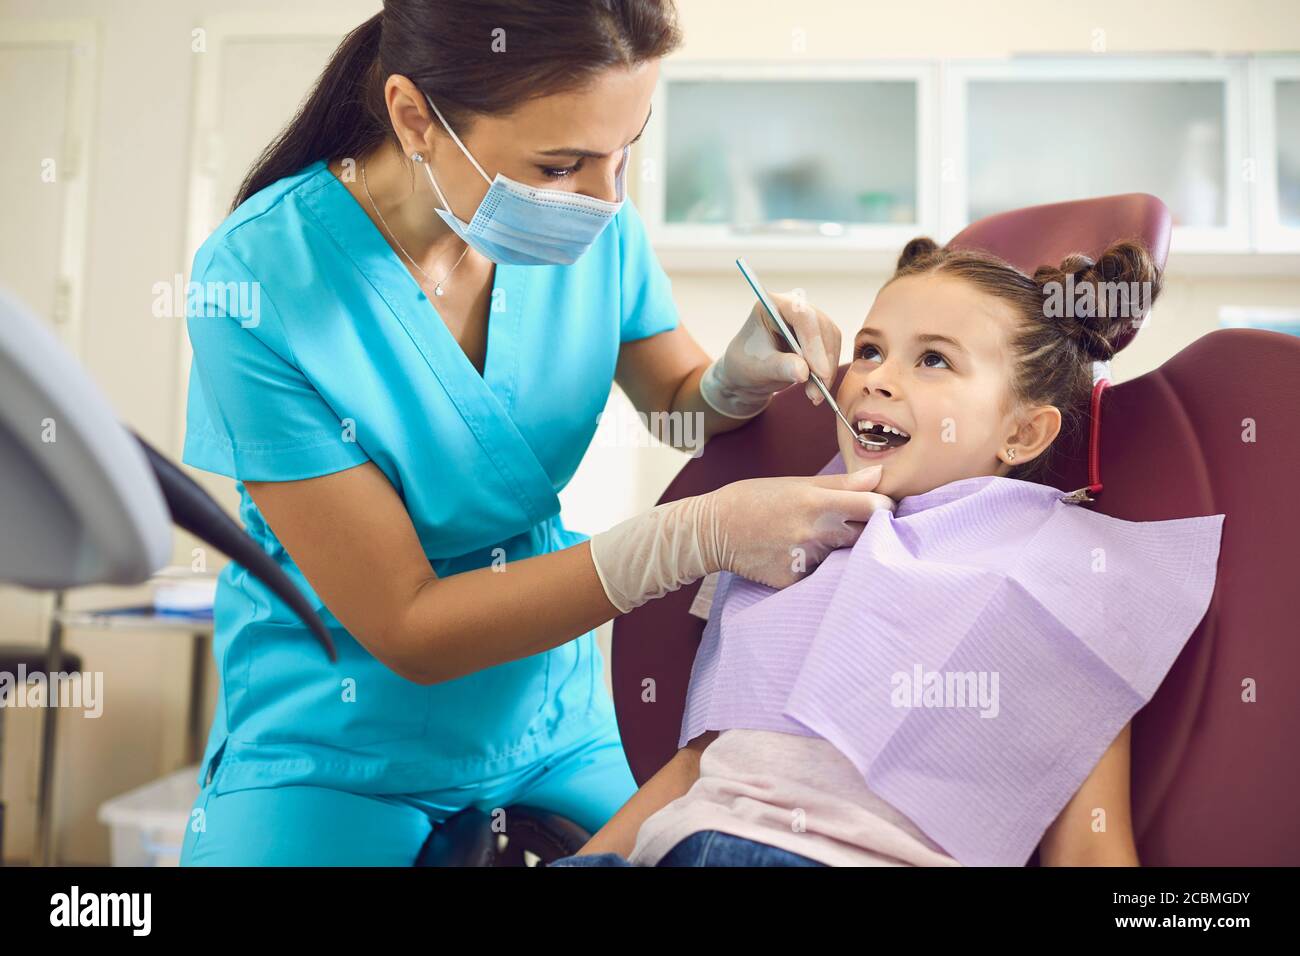 Kleines Mädchen bei einem pädiatrischen Zahnarzt mit Maske und Handschuhe Service Kinderzahnpflege in einer Zahnklinik. Stockfoto